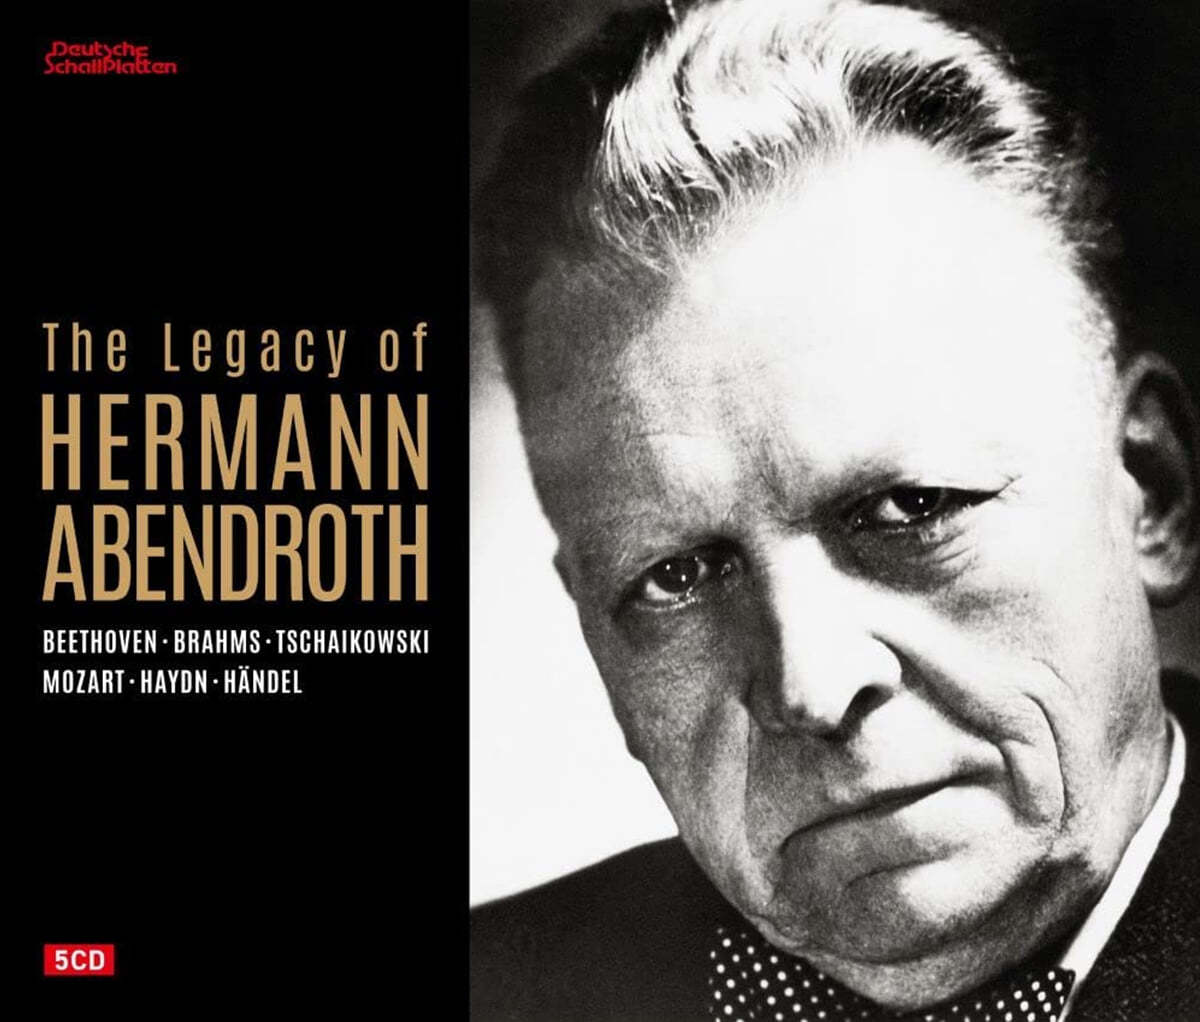 헤르만 아벤트로트의 불멸의 유산 - 베토벤 / 브람스 / 차이코프스키 /  모차르트 / 하이든 / 헨델 (The Legacy of Hermann Abendroth)